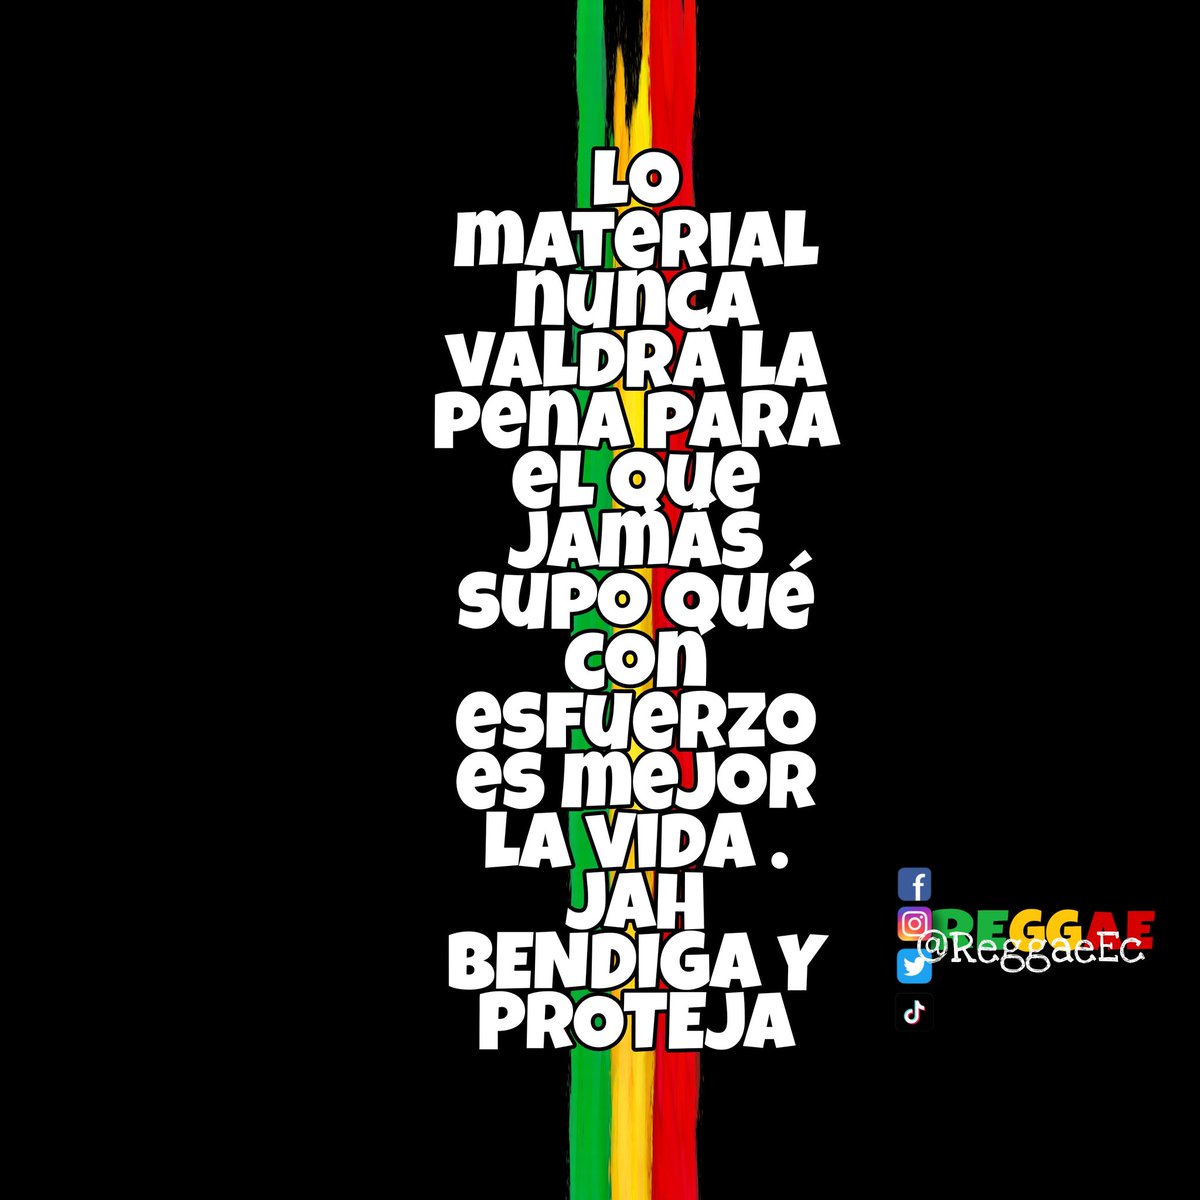 Rasta siempre por el camino correcto Jah Bless ✌️😎💚💛❤️ Oye #Reggaemusic #reggae #VidaRasta #jahlove #jaharmy #freedom #jahbless #Rastafari #familylove #reggae593 📻 🎶